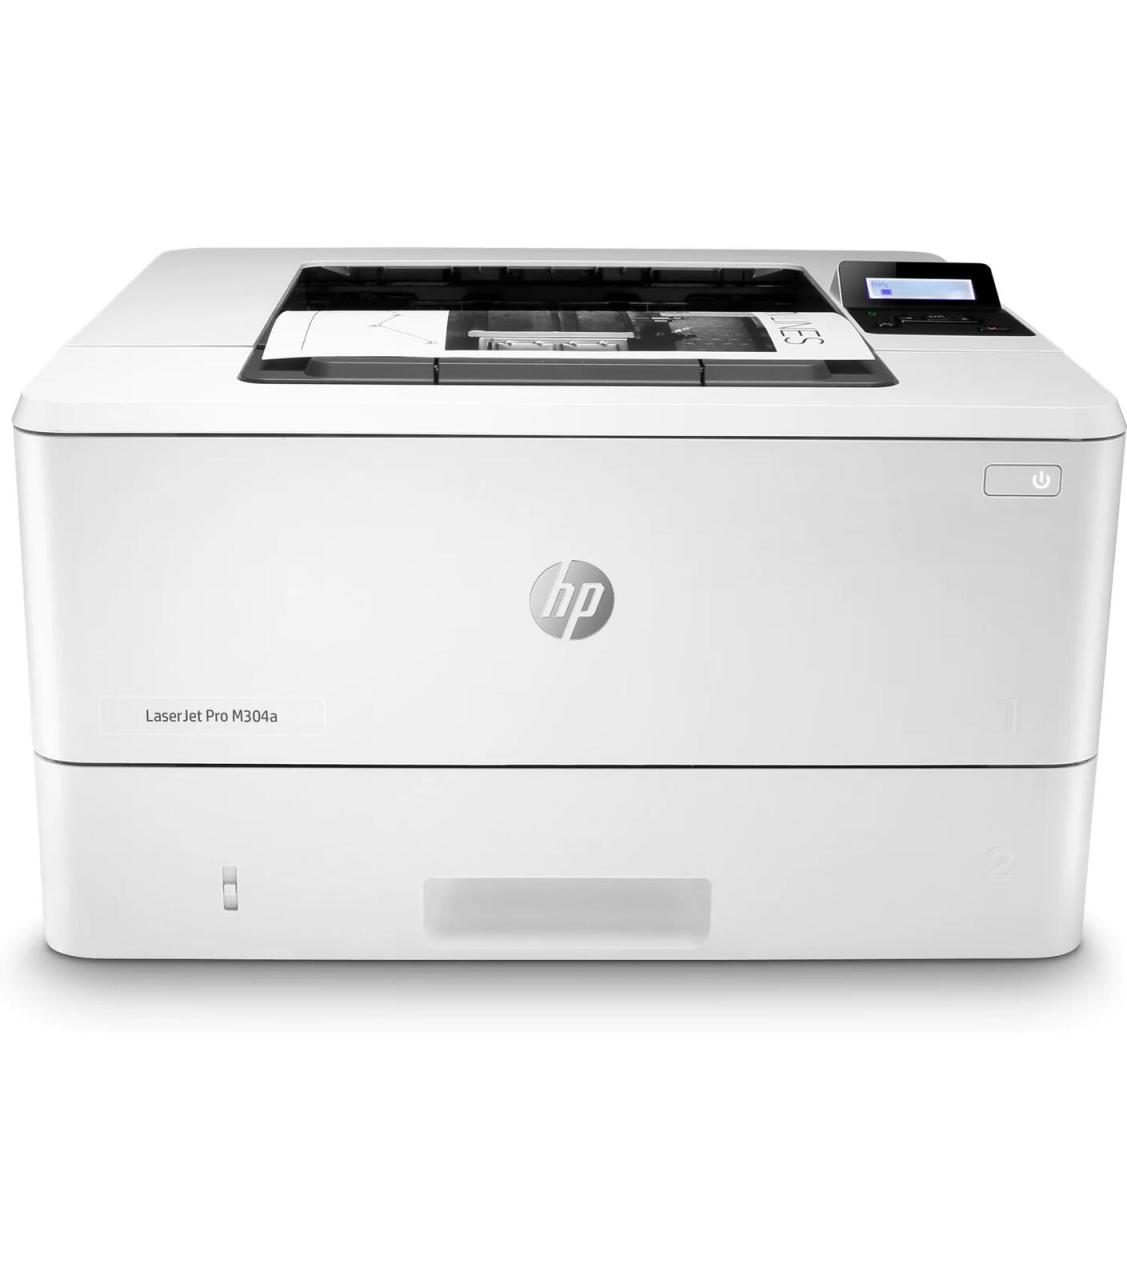 HP LaserJet Pro M304a Laserdrucker s/w von HP Inc.